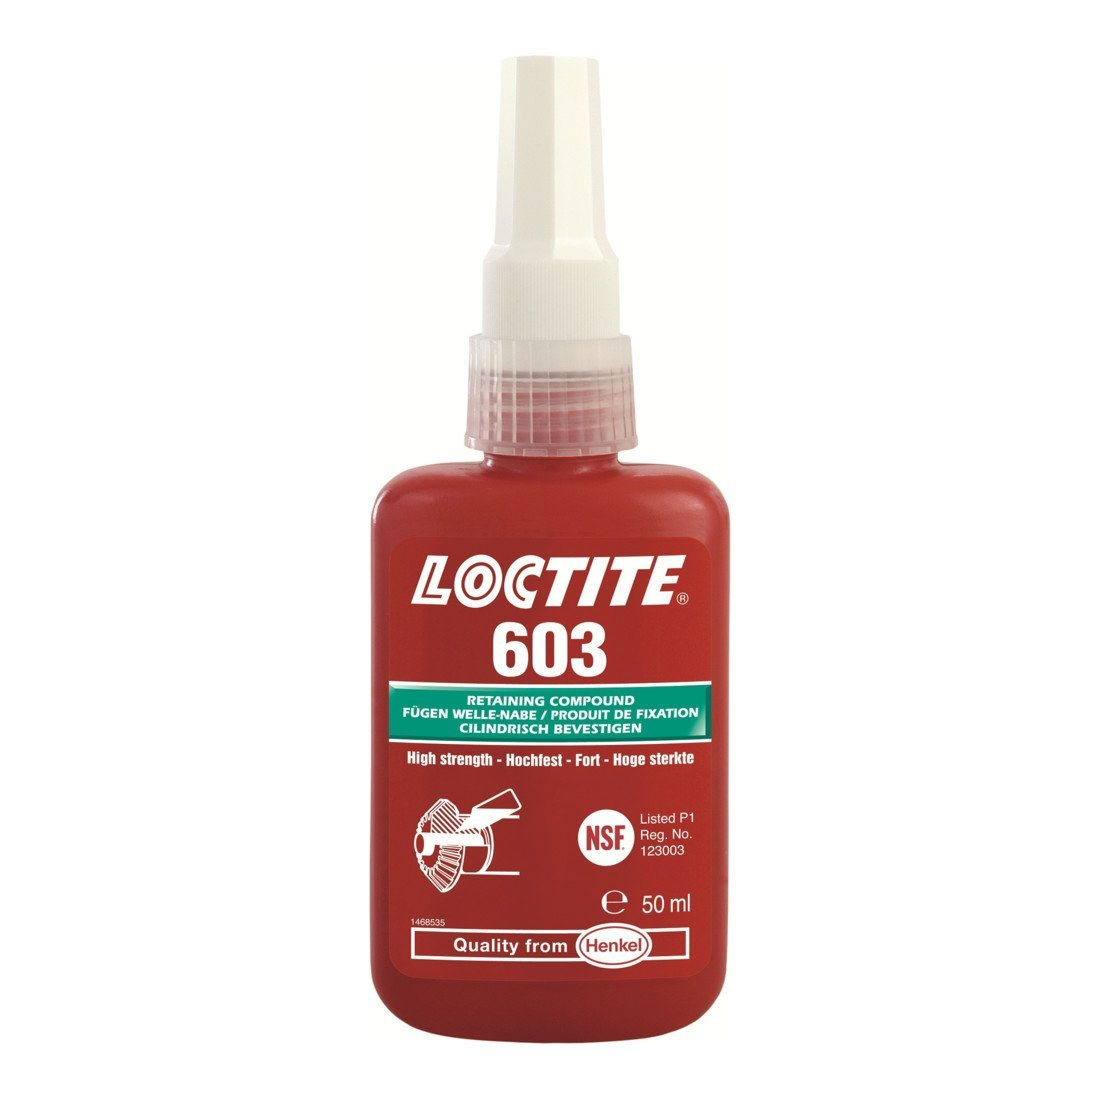 Loctite 603 retaining adhesive, 50 ml